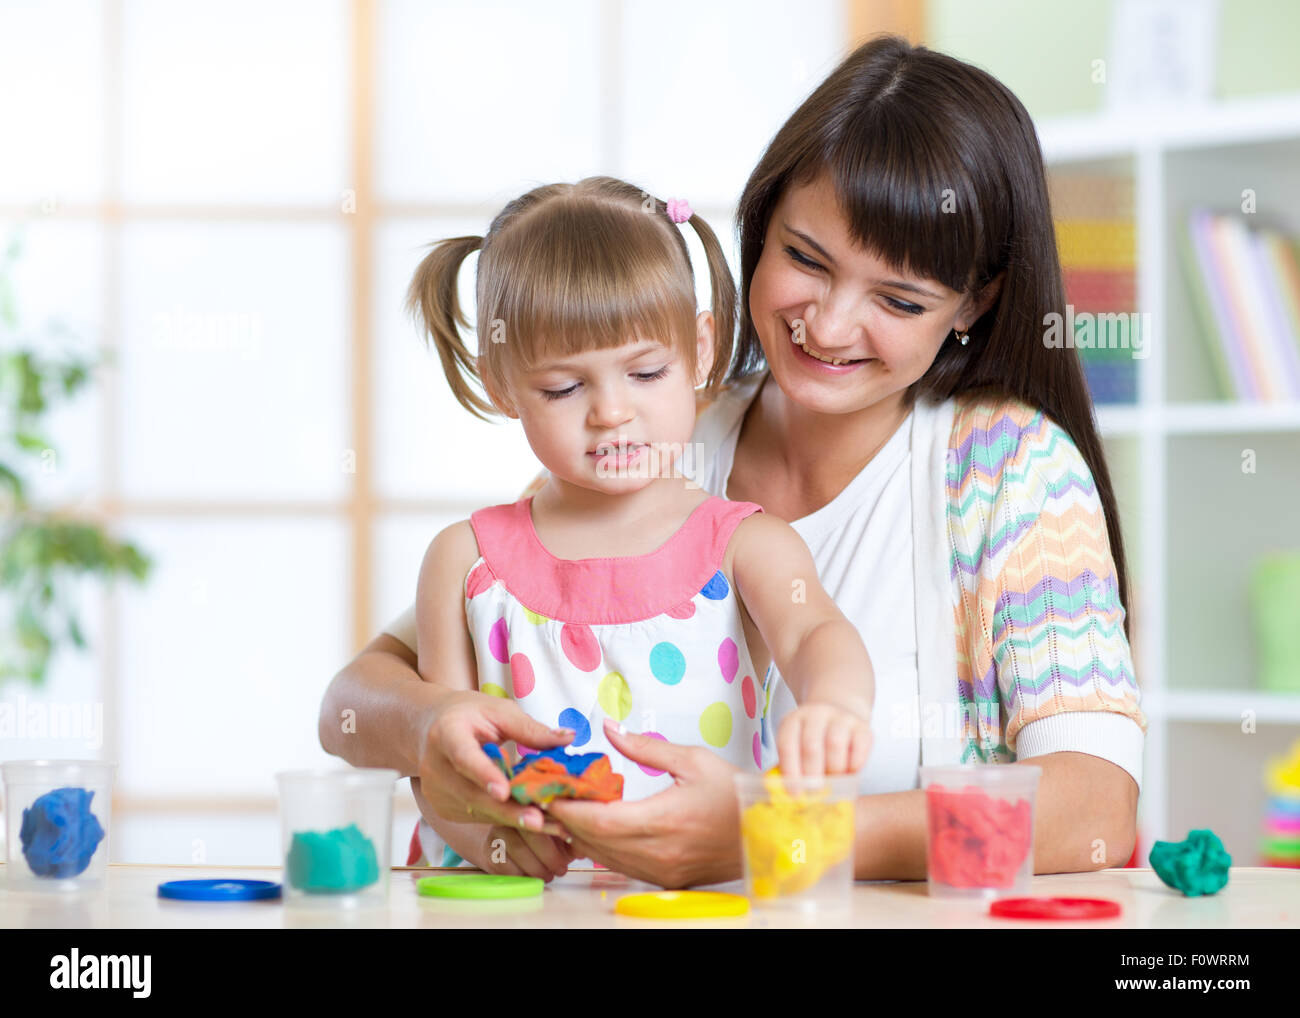 Glückliches Kind und Mutter am Tisch sitzen und mit bunten Ton Spielzeug spielen Stockfoto